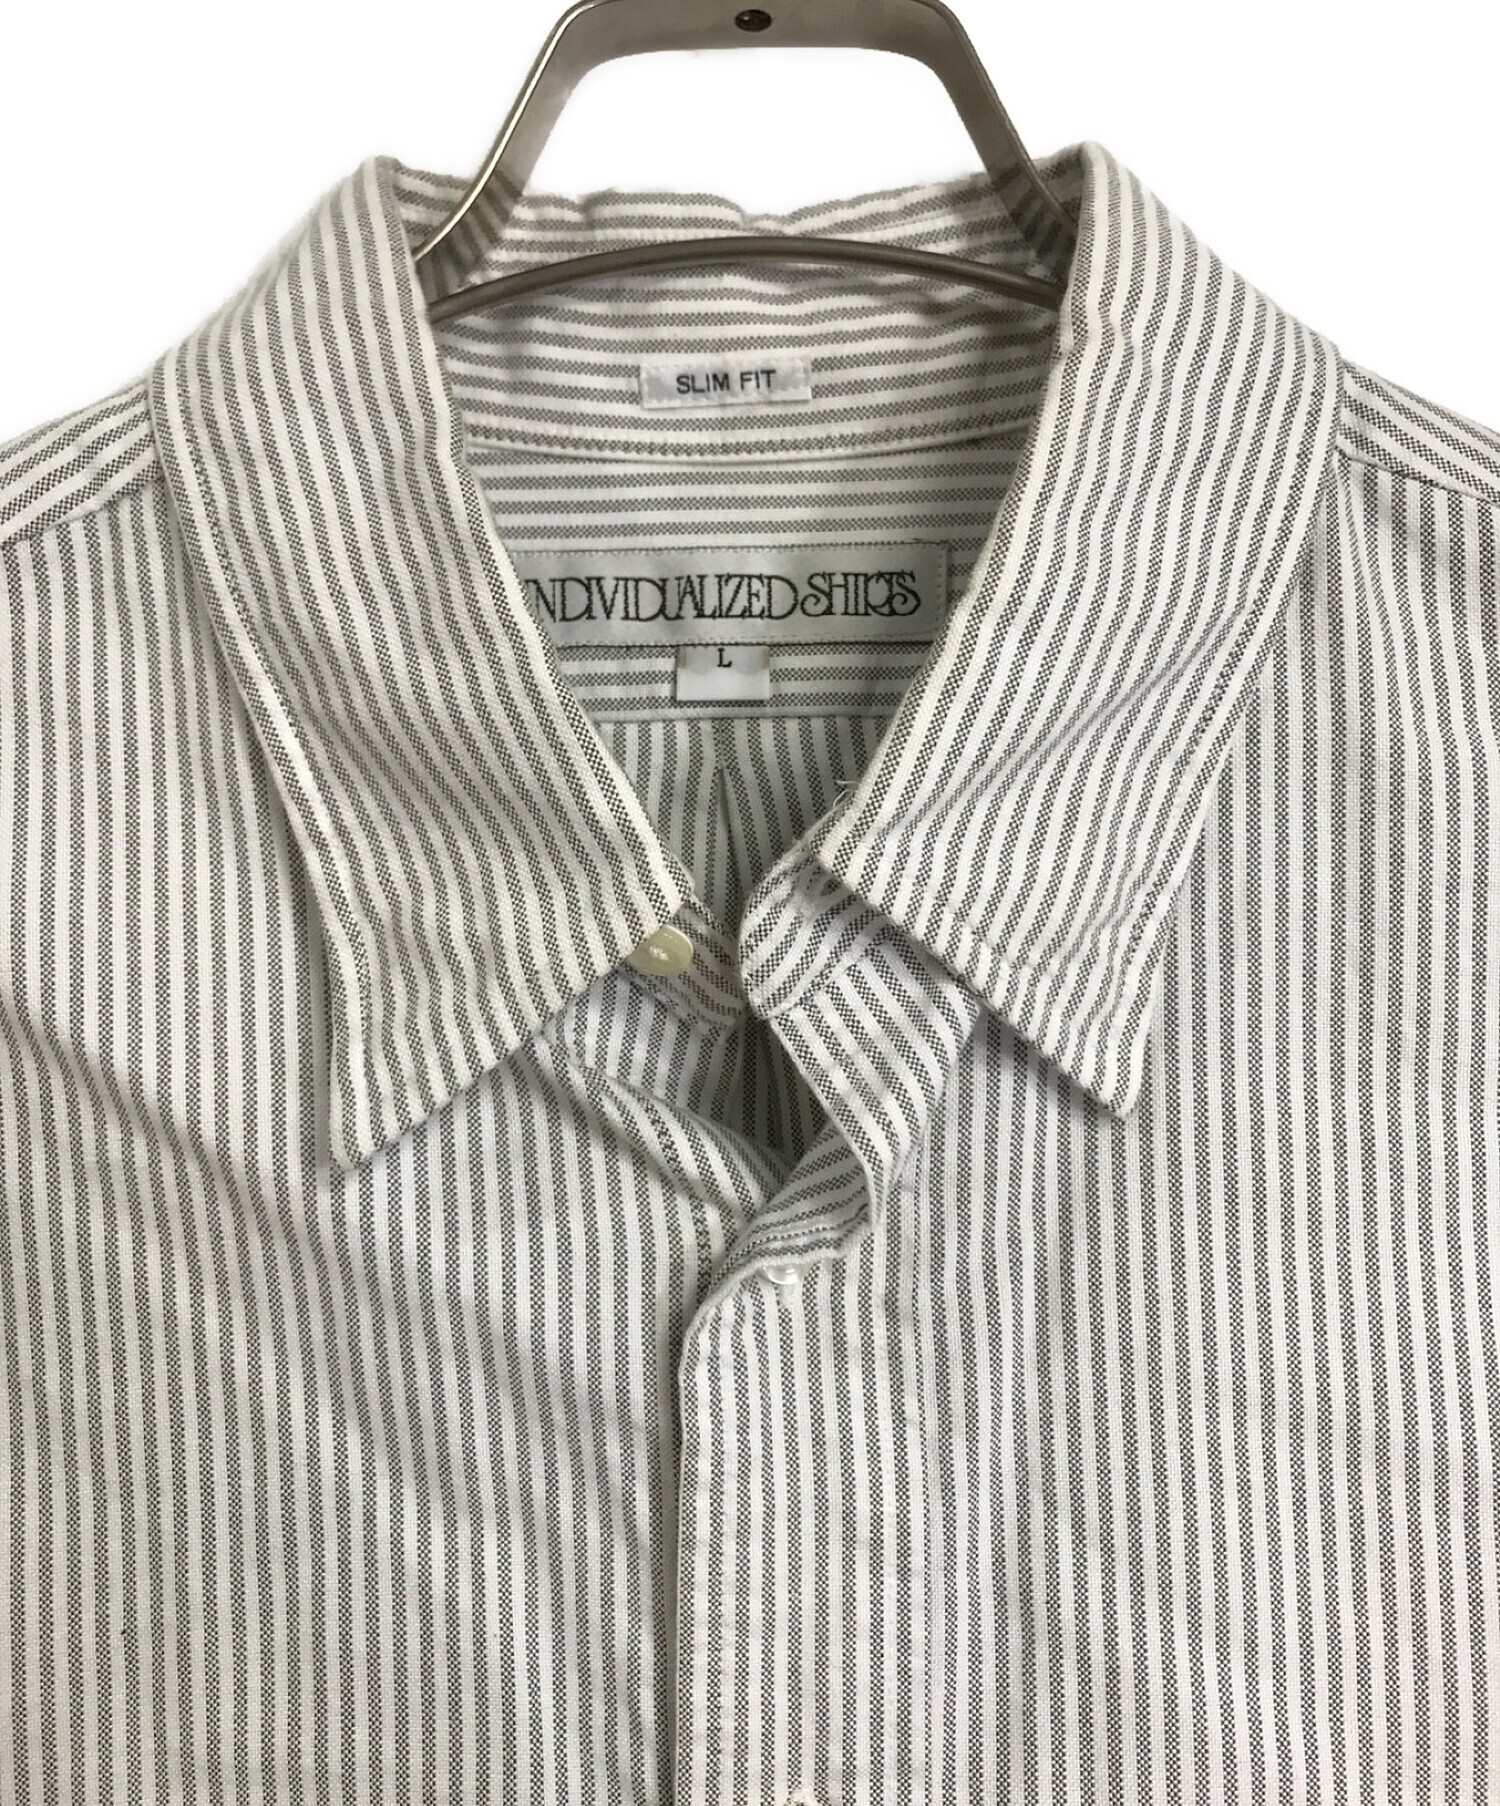 INDIVIDUALIZED SHIRTS (インディビジュアライズドシャツ) ストライプBDシャツ グレー×ホワイト サイズ:L